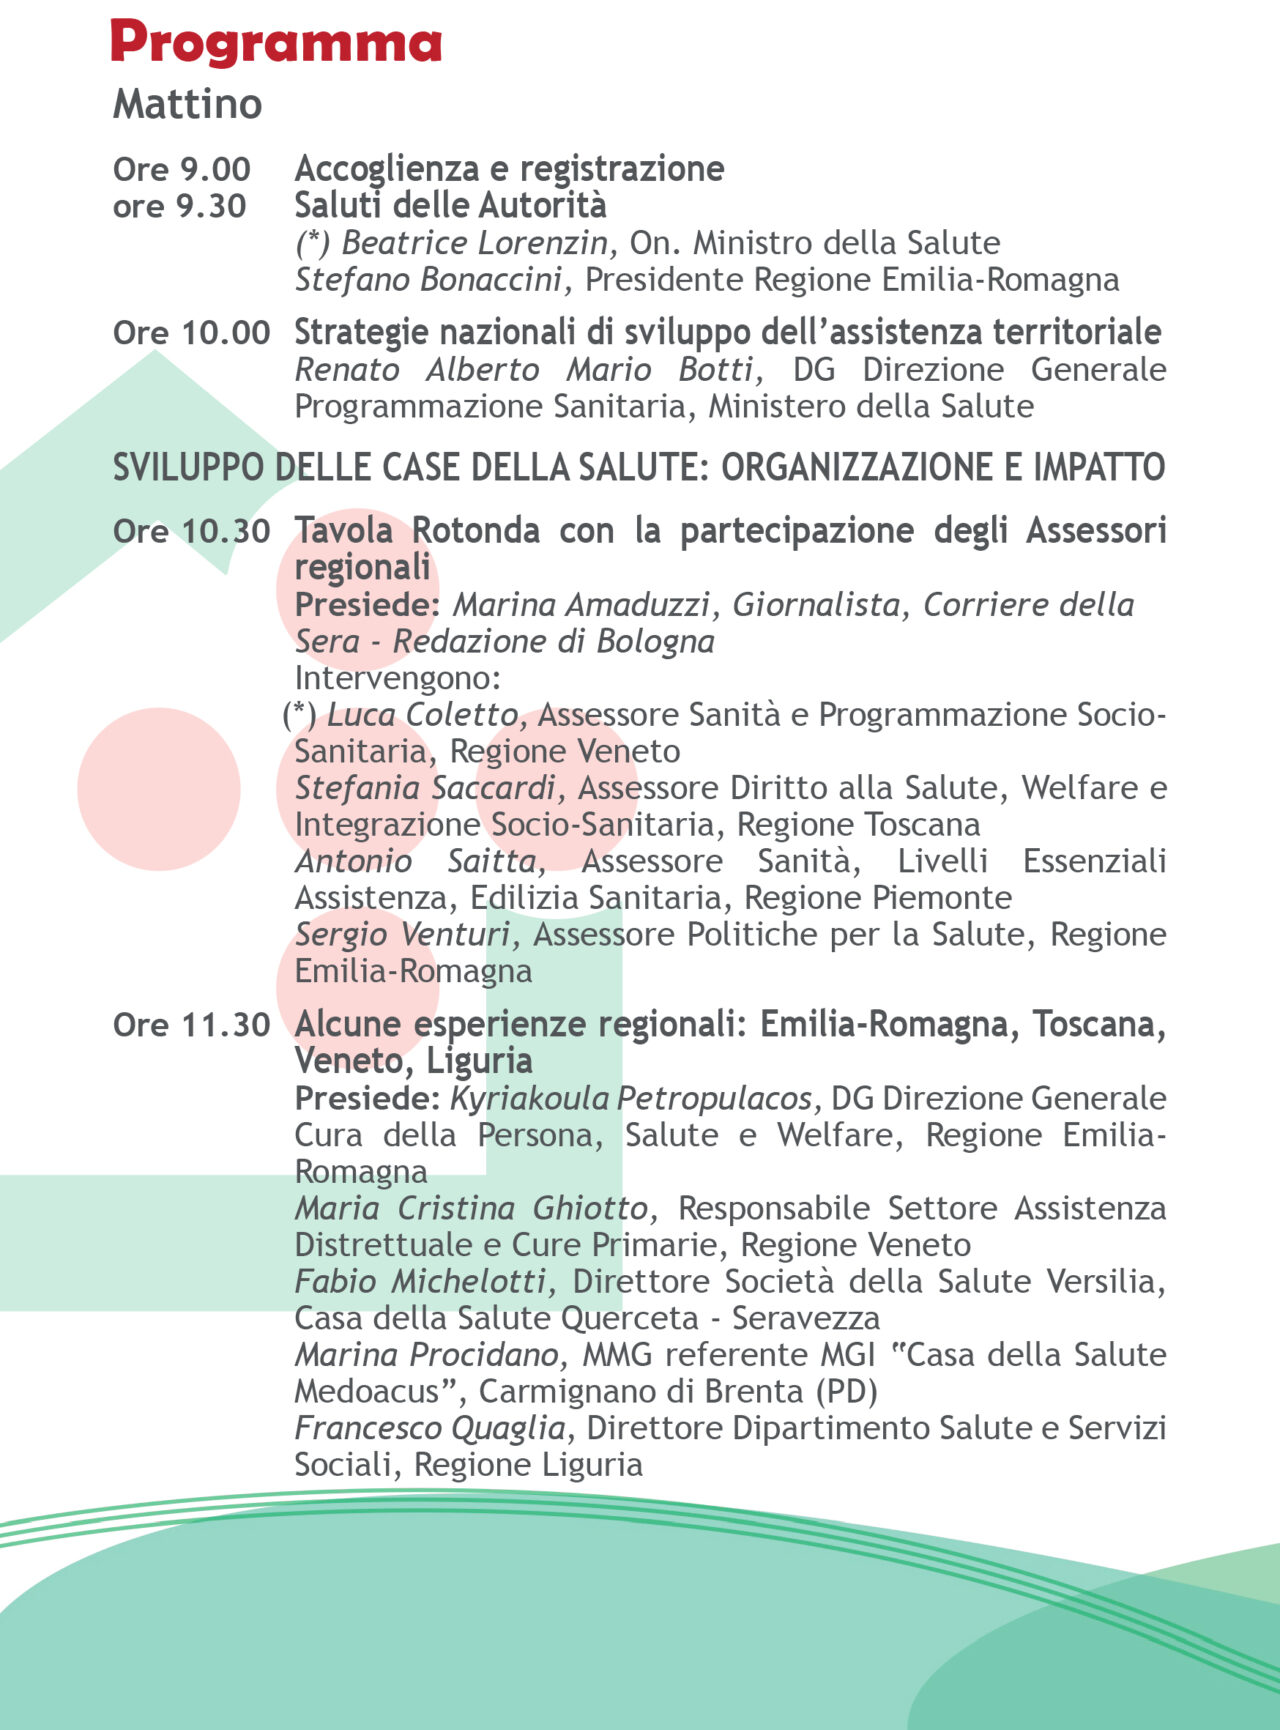 Programma Convegno CdS_Bologna_17 giugno (1)-4